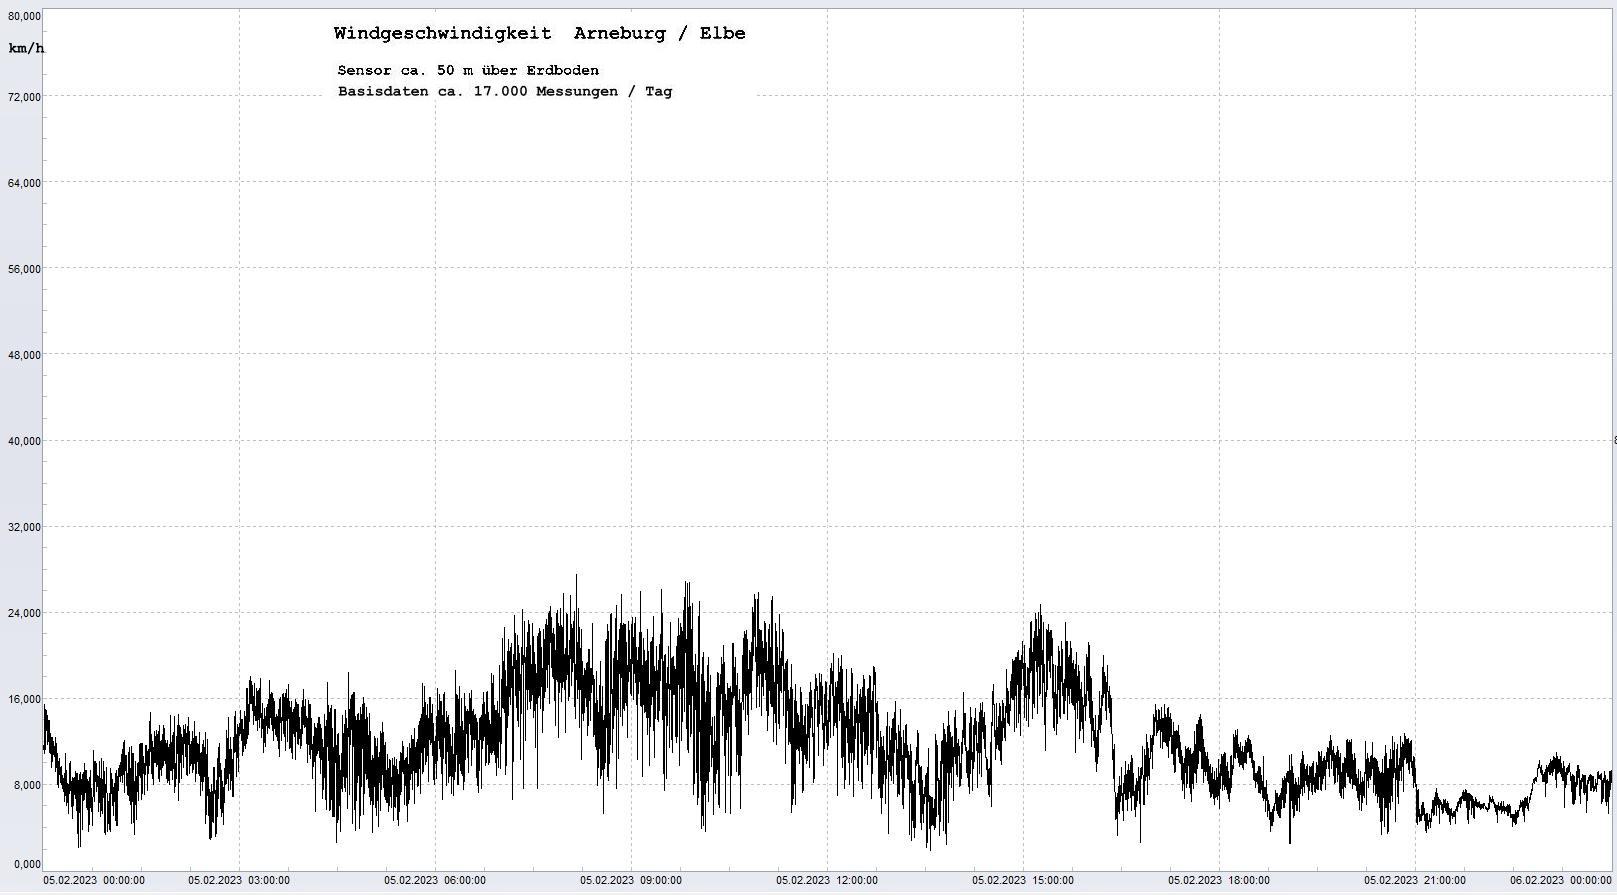 Arneburg Tages-Diagramm Winddaten, 05.02.2023
  Diagramm, Sensor auf Gebude, ca. 50 m ber Erdboden, Basis: 5s-Aufzeichnung